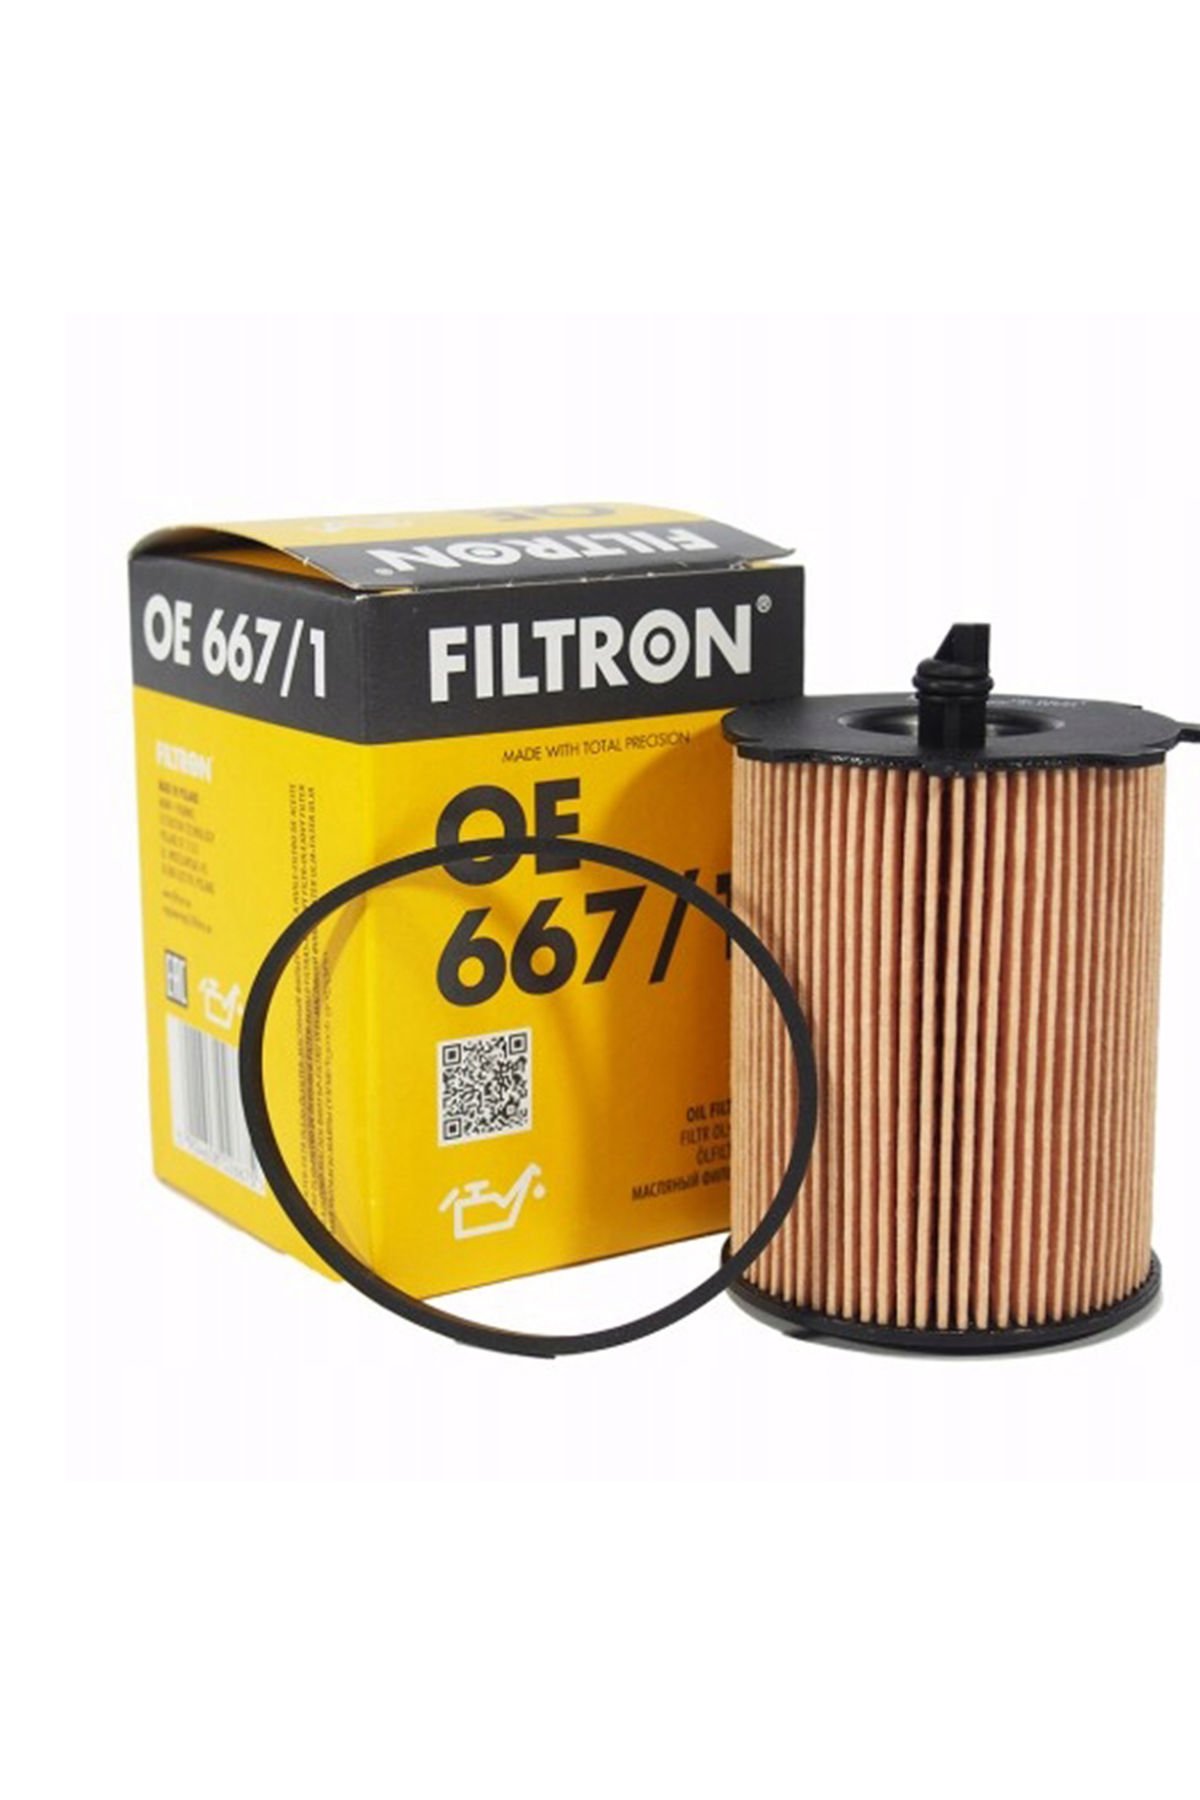 Citroen C3 1.4 HDI 90HP Dizel Yağ Filtresi 2003-2009 Filtron